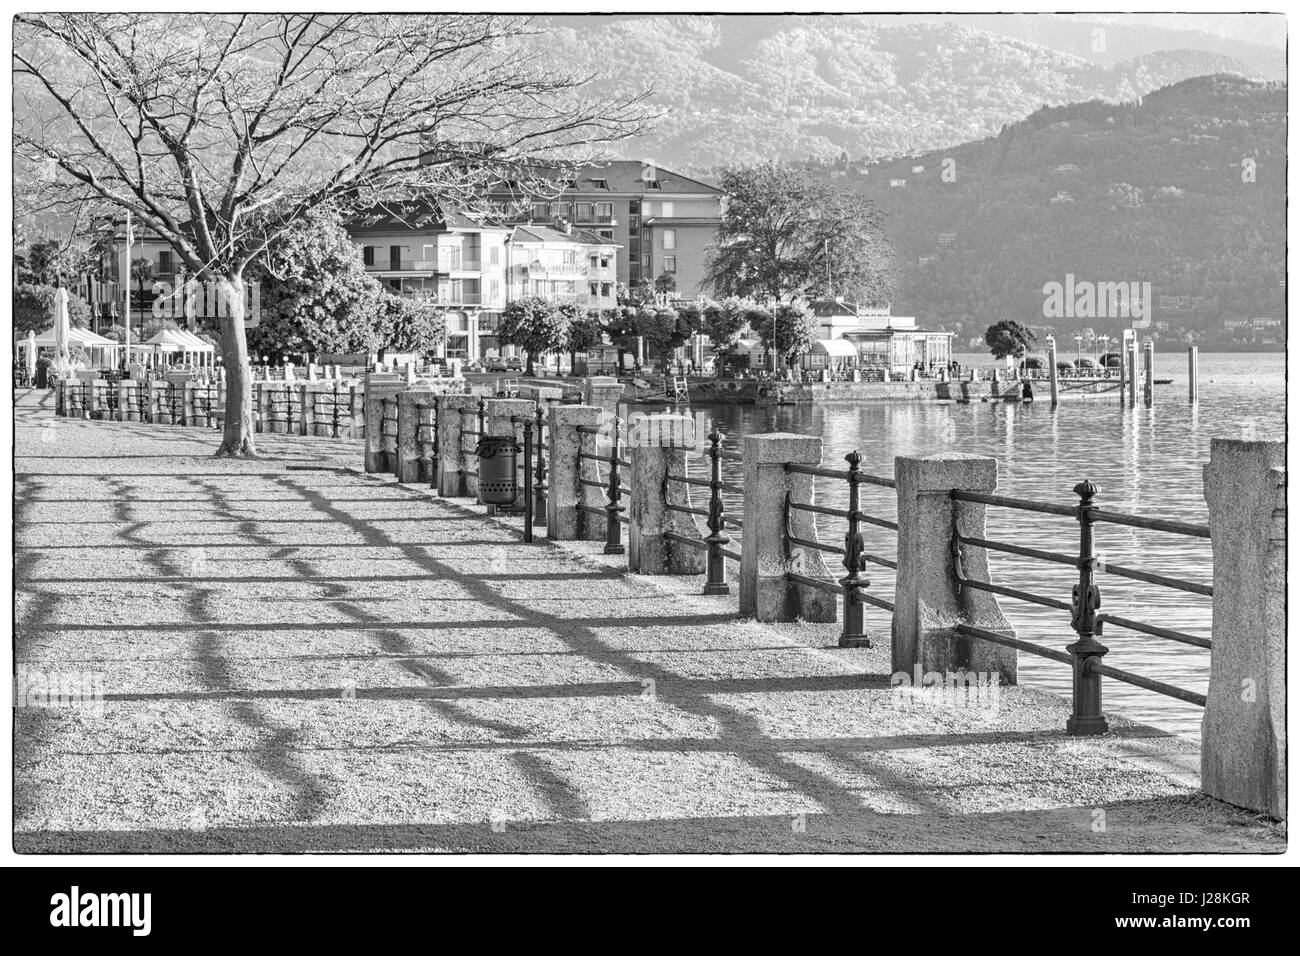 am See Promenade am Wasser früh morgens in Baveno, Lago Maggiore, Italien im April - schwarz / weiß Monochrom Stockfoto